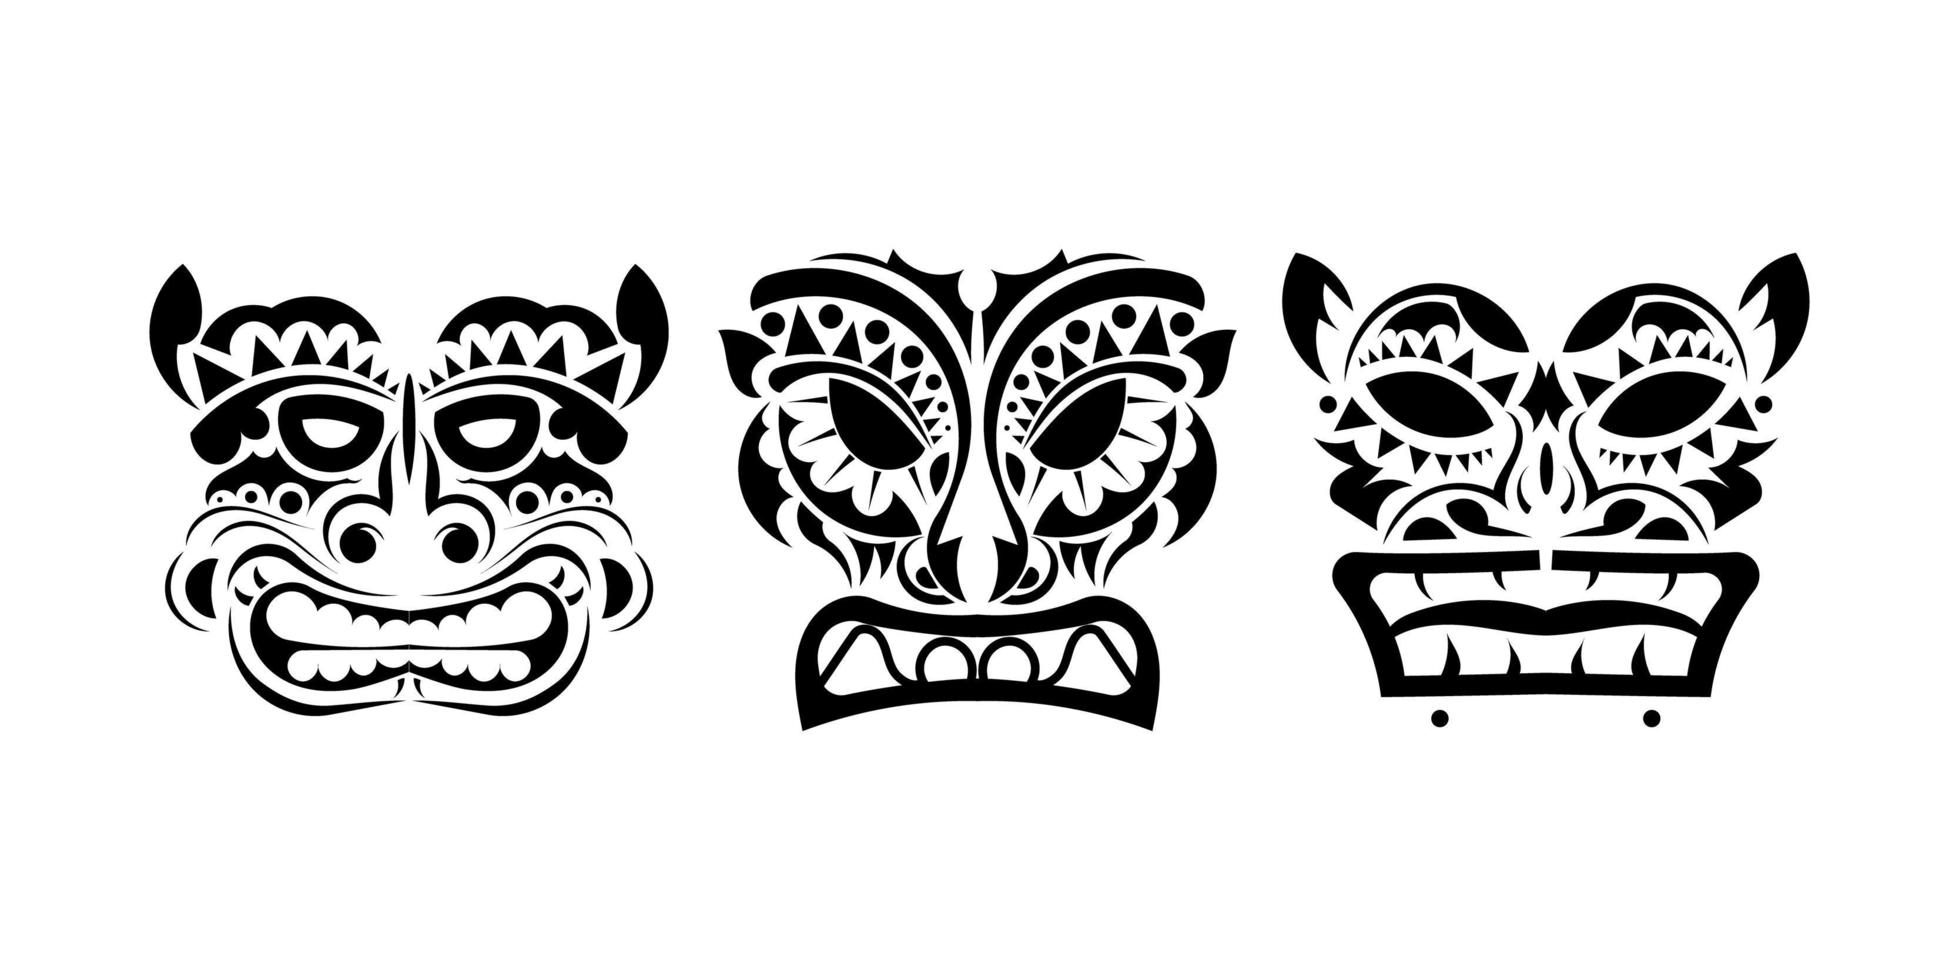 conjunto de caras de tatuajes o máscaras en estilo ornamental. patrones tribales polinesios, maoríes o hawaianos. vector